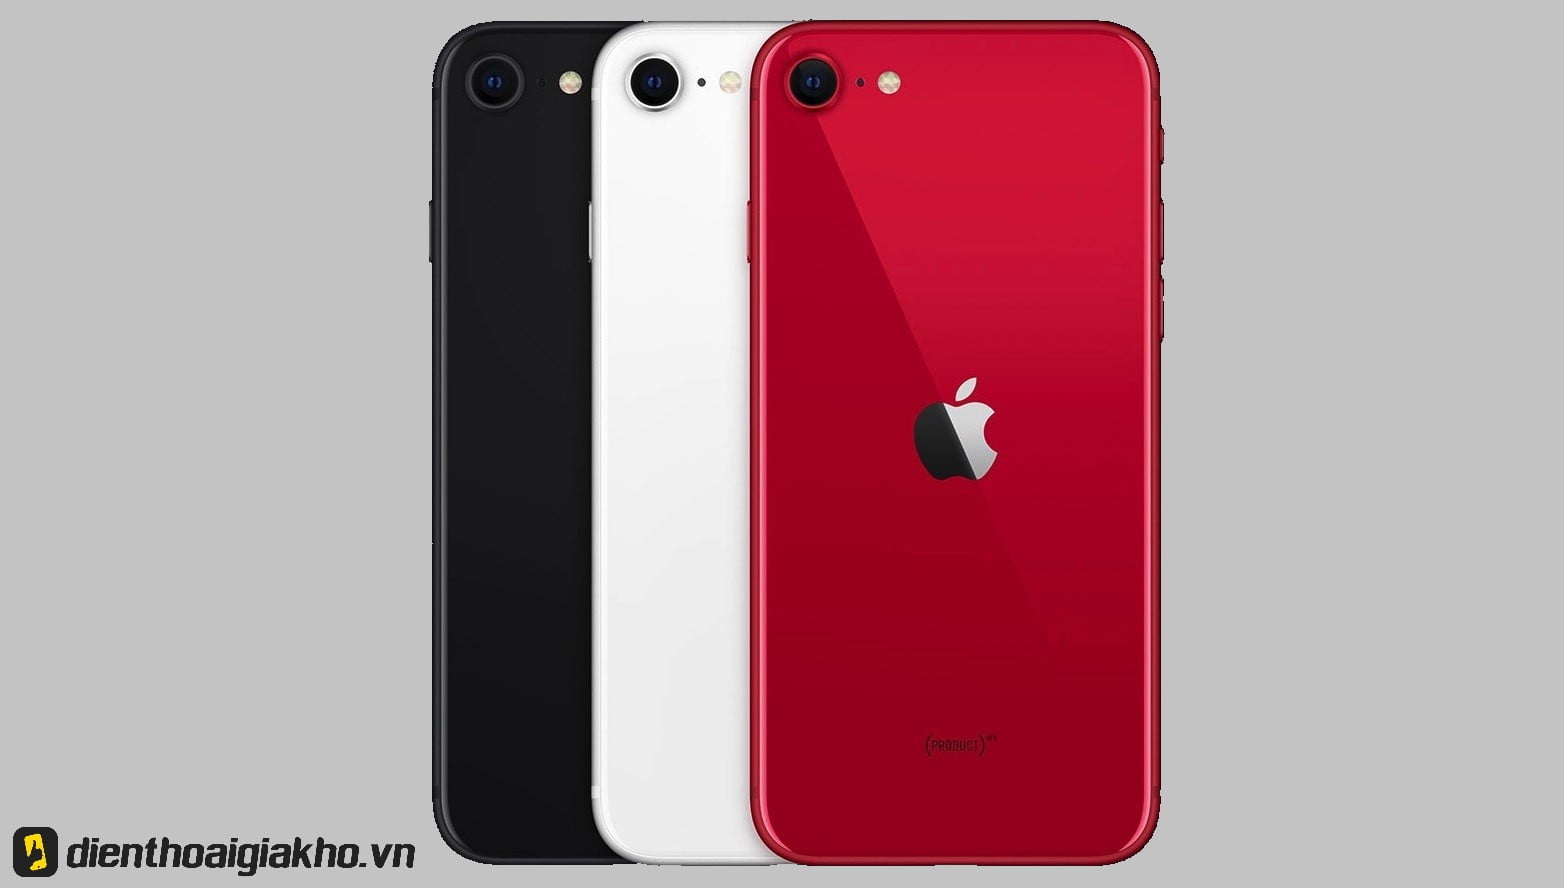 iPhone SE 2020 ra mắt với 3 màu gồm: Đỏ, Đen và Trắng khác với iPhone 8 (Đen, Trắng, Hồng).